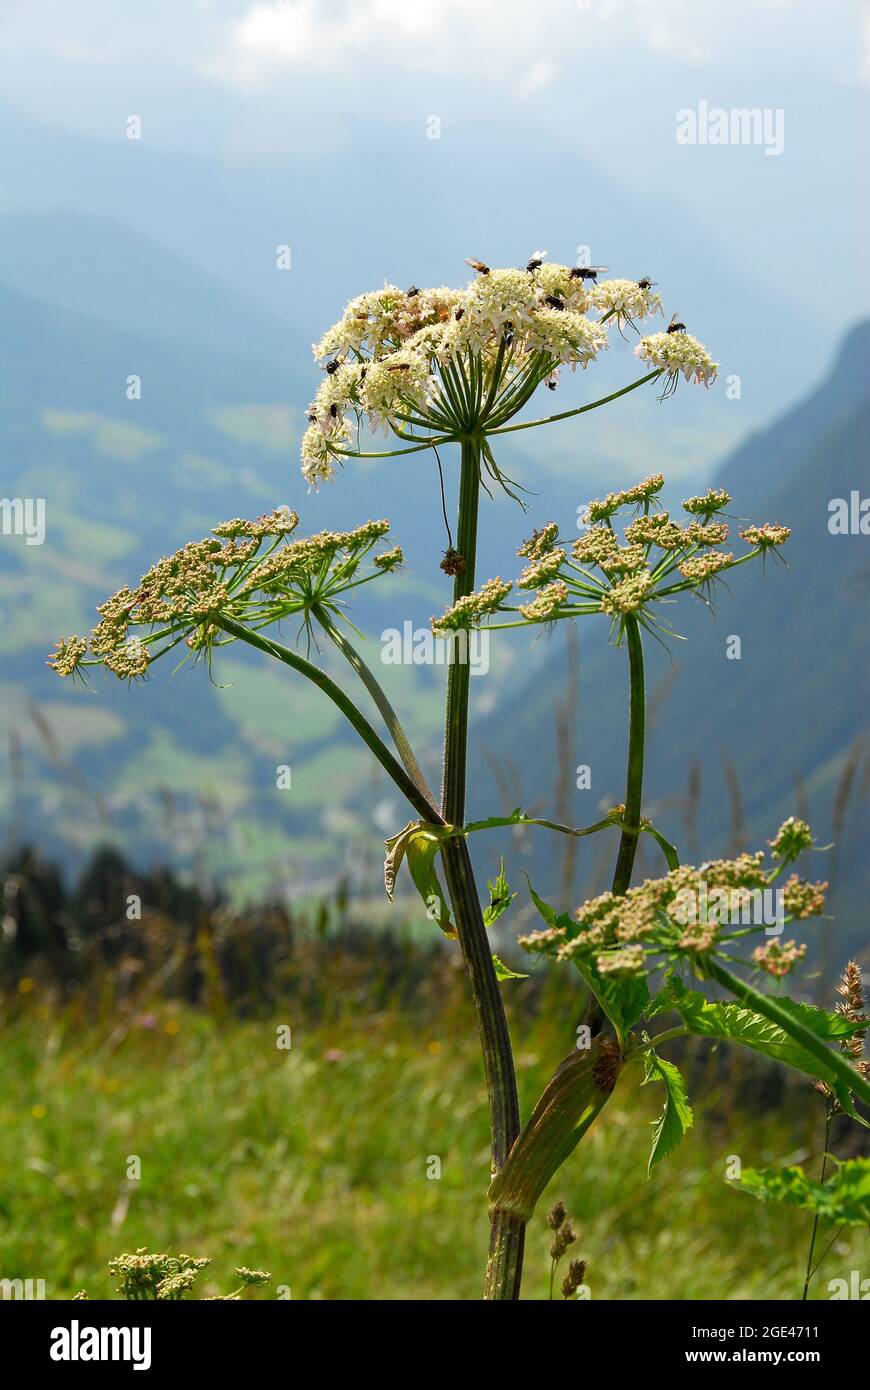 masterwort. Meisterwurz, Peucedanum ostruthium, császárgyökér, Alps, Austria, Europe Stock Photo